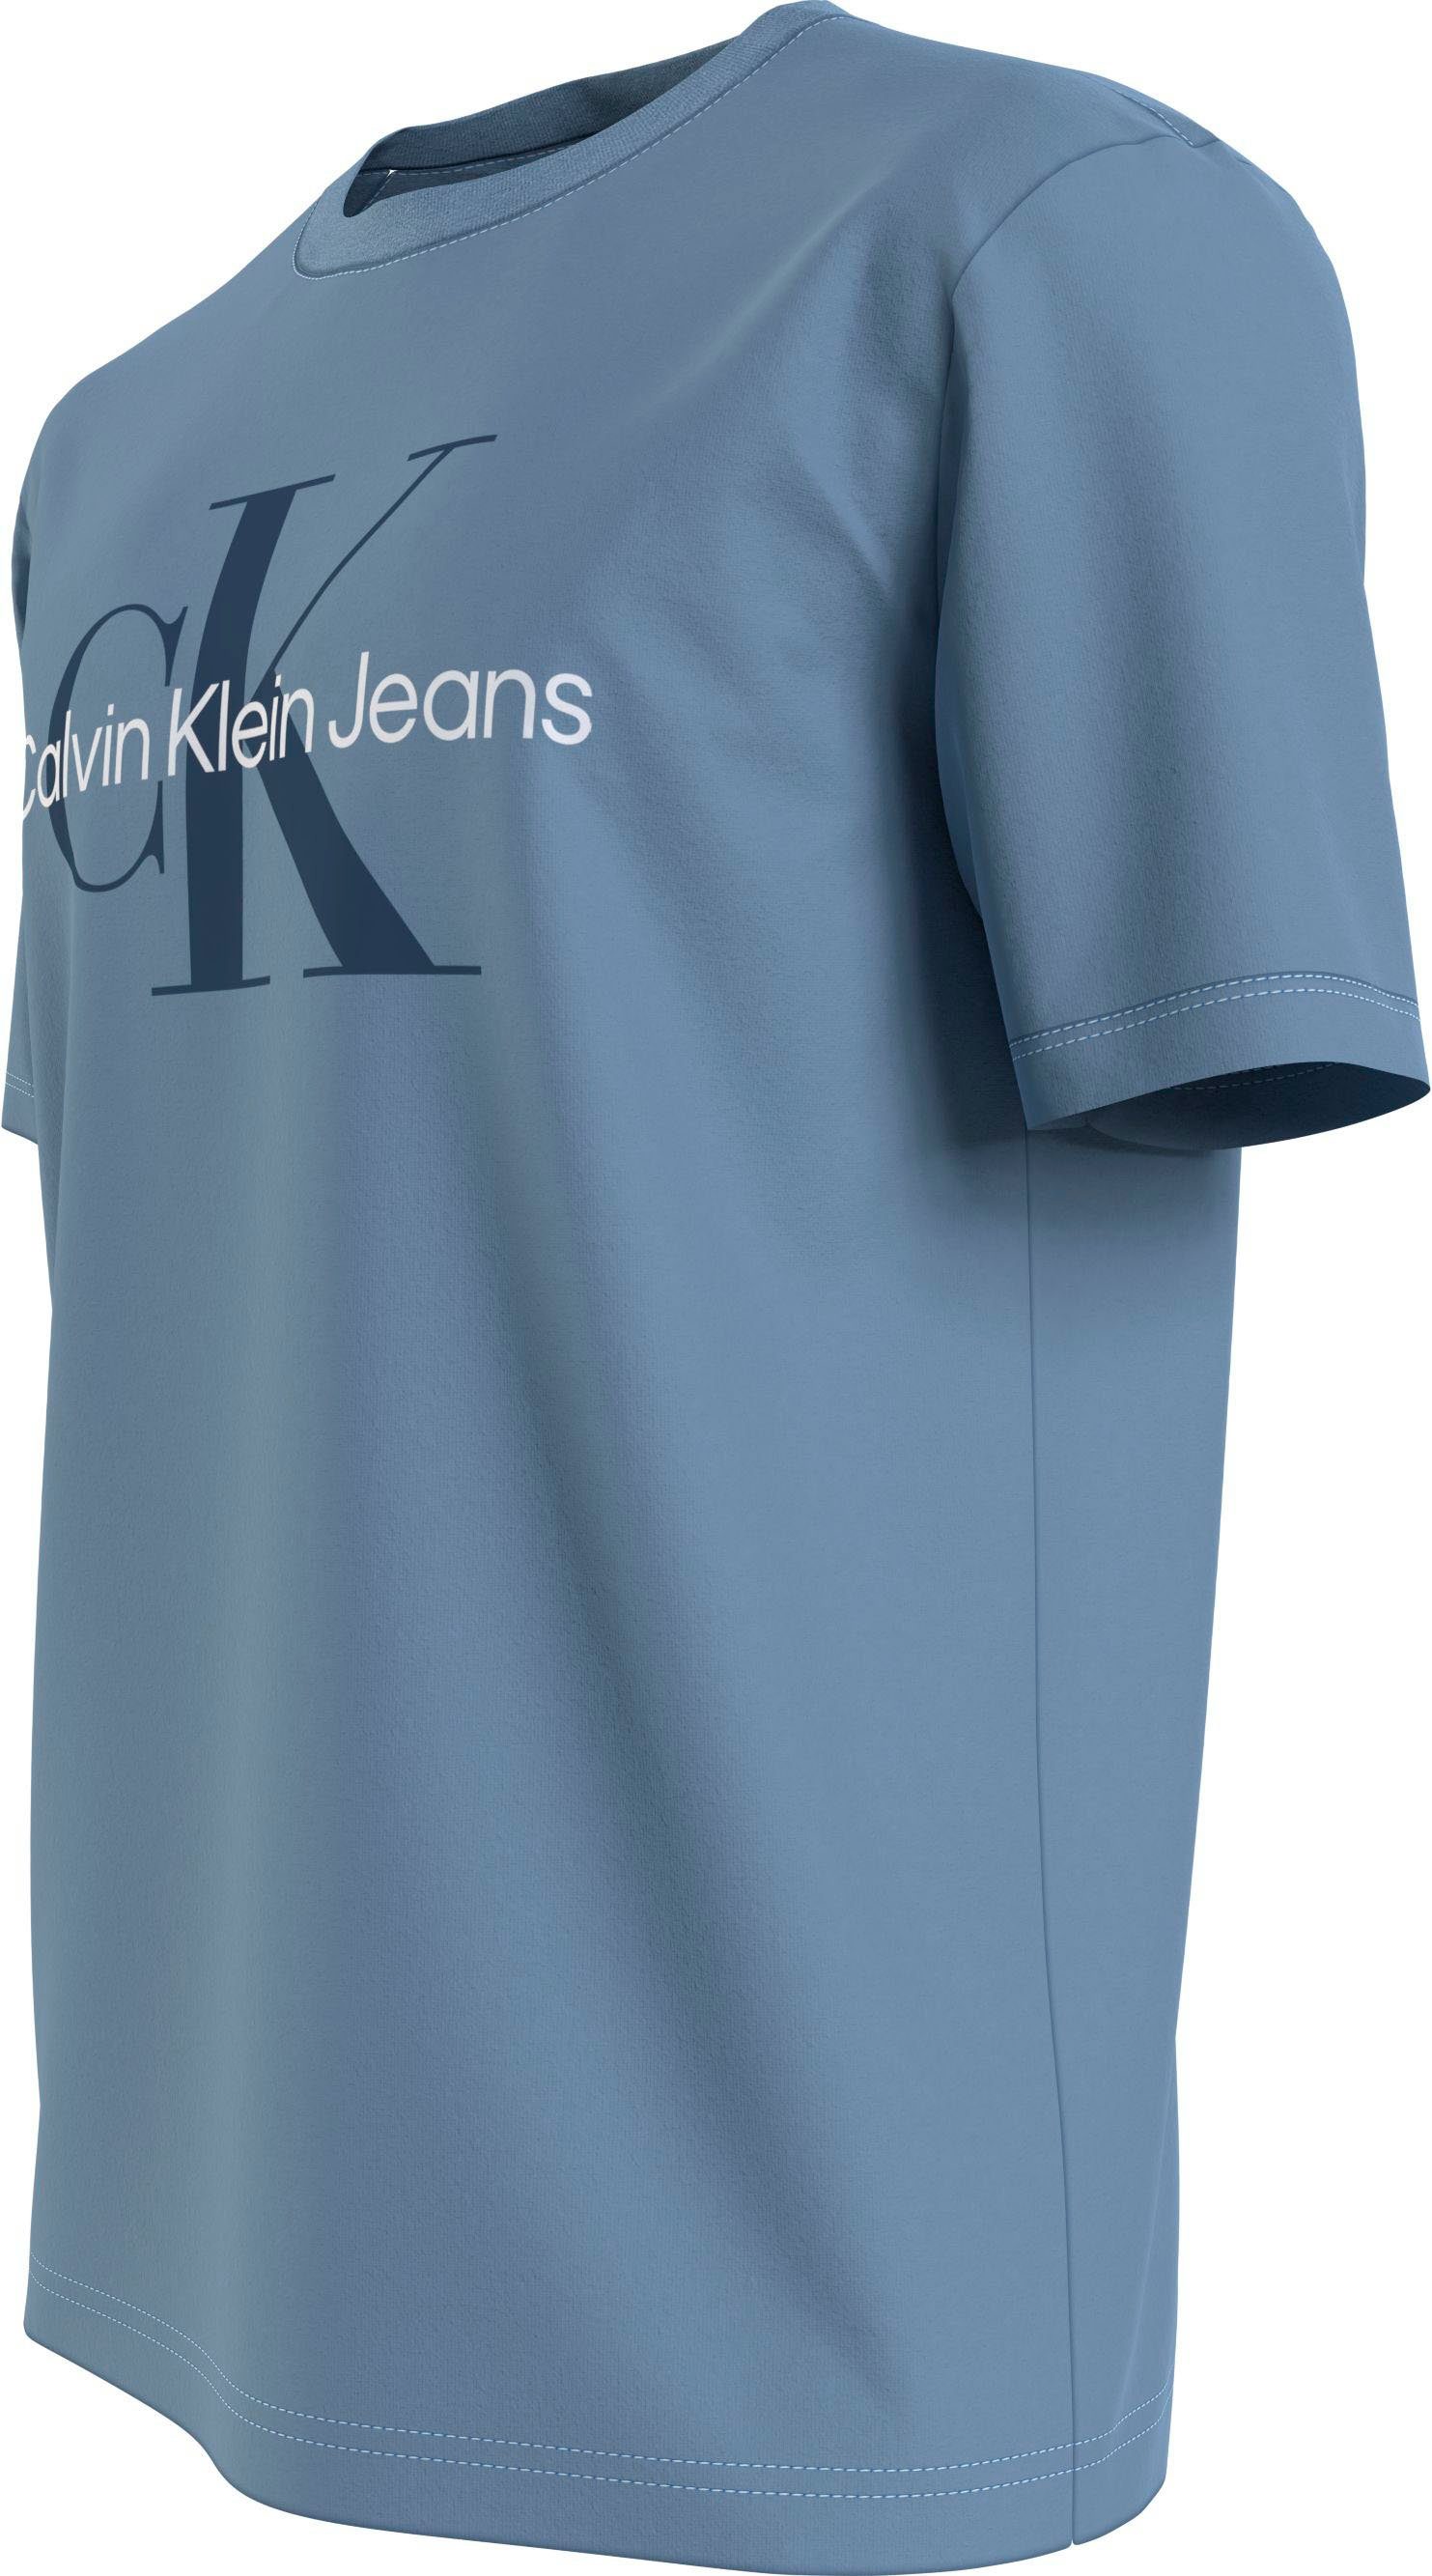 SEASONAL Logoschriftzug Calvin Iceland Klein mit MONOLOGO TEE Blue Brust Calvin Klein auf Jeans T-Shirt der